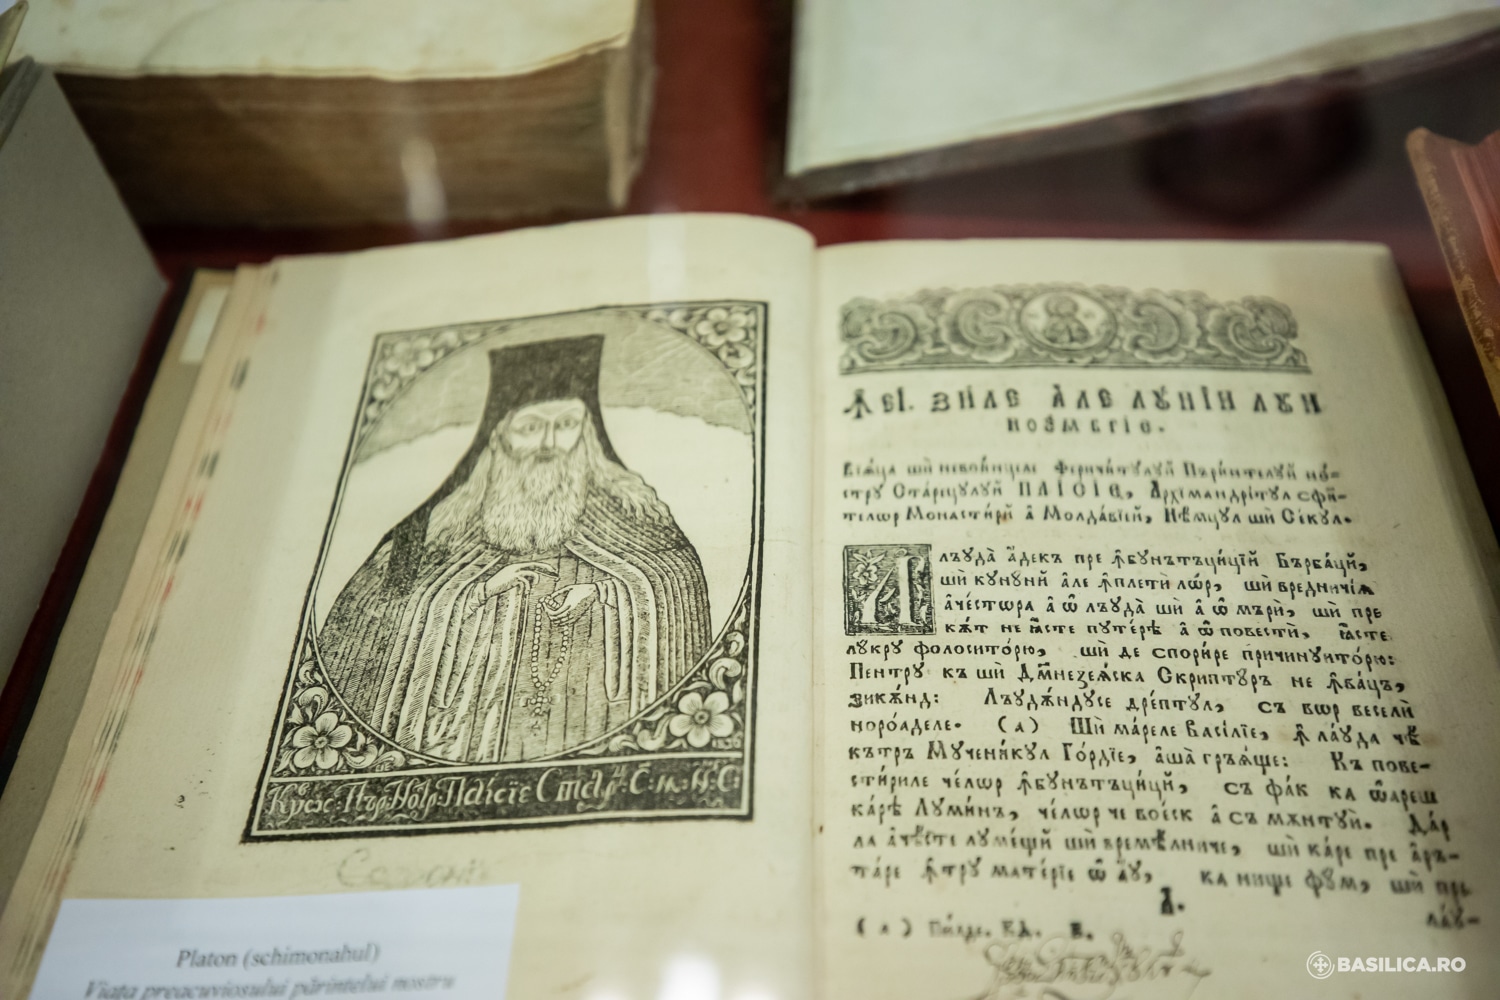 Une exposition des manuscrits et des ouvrages philocaliques imprimés des disciples de saint Païssy de de Neamț (Velitchkovsky) à Bucarest